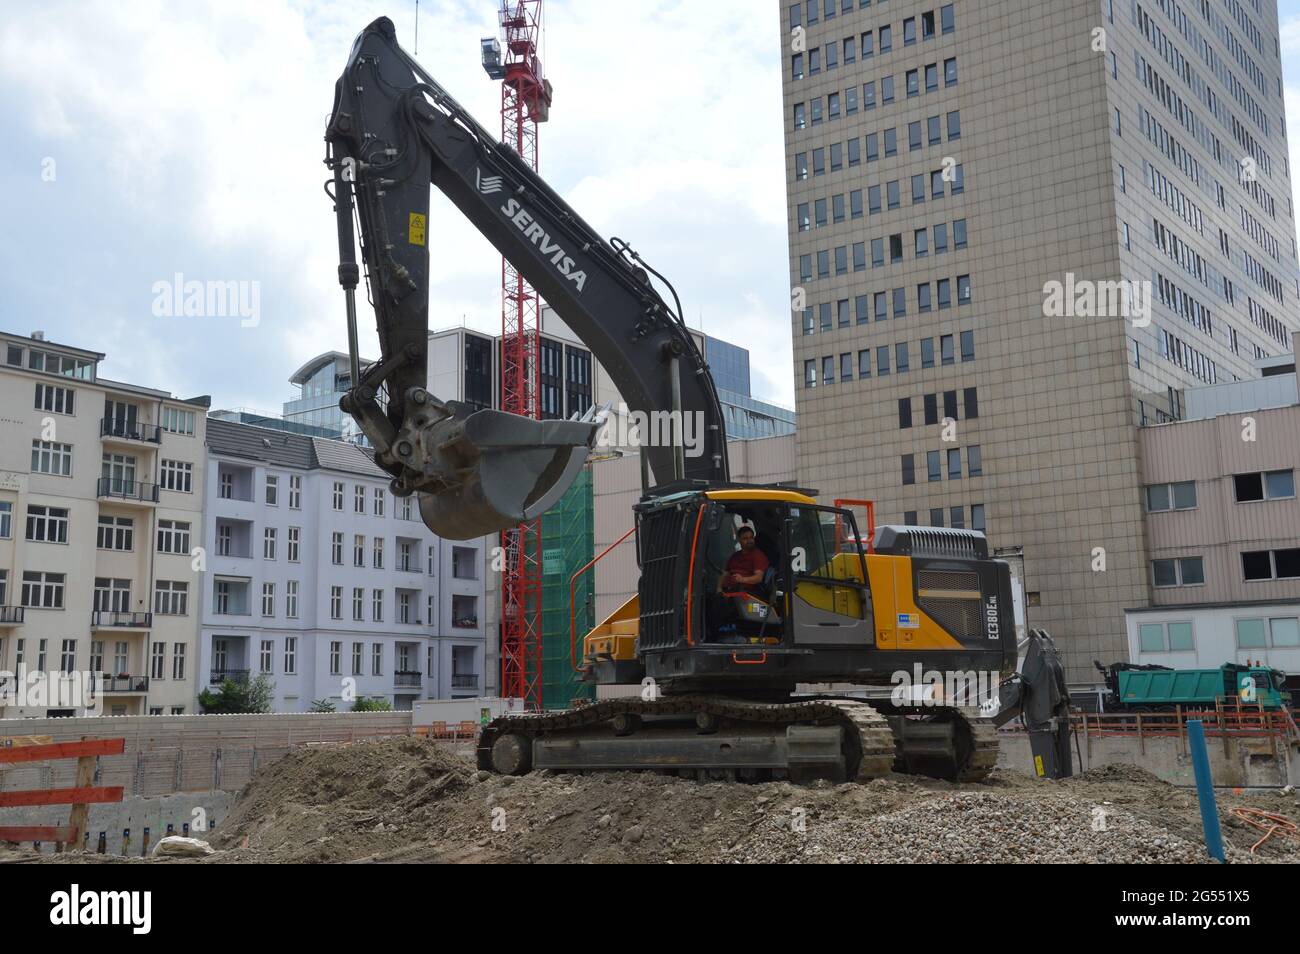 Fürst construction site at Kurfürstendamm in Berlin, Germany - 25 June 2021 Stock Photo